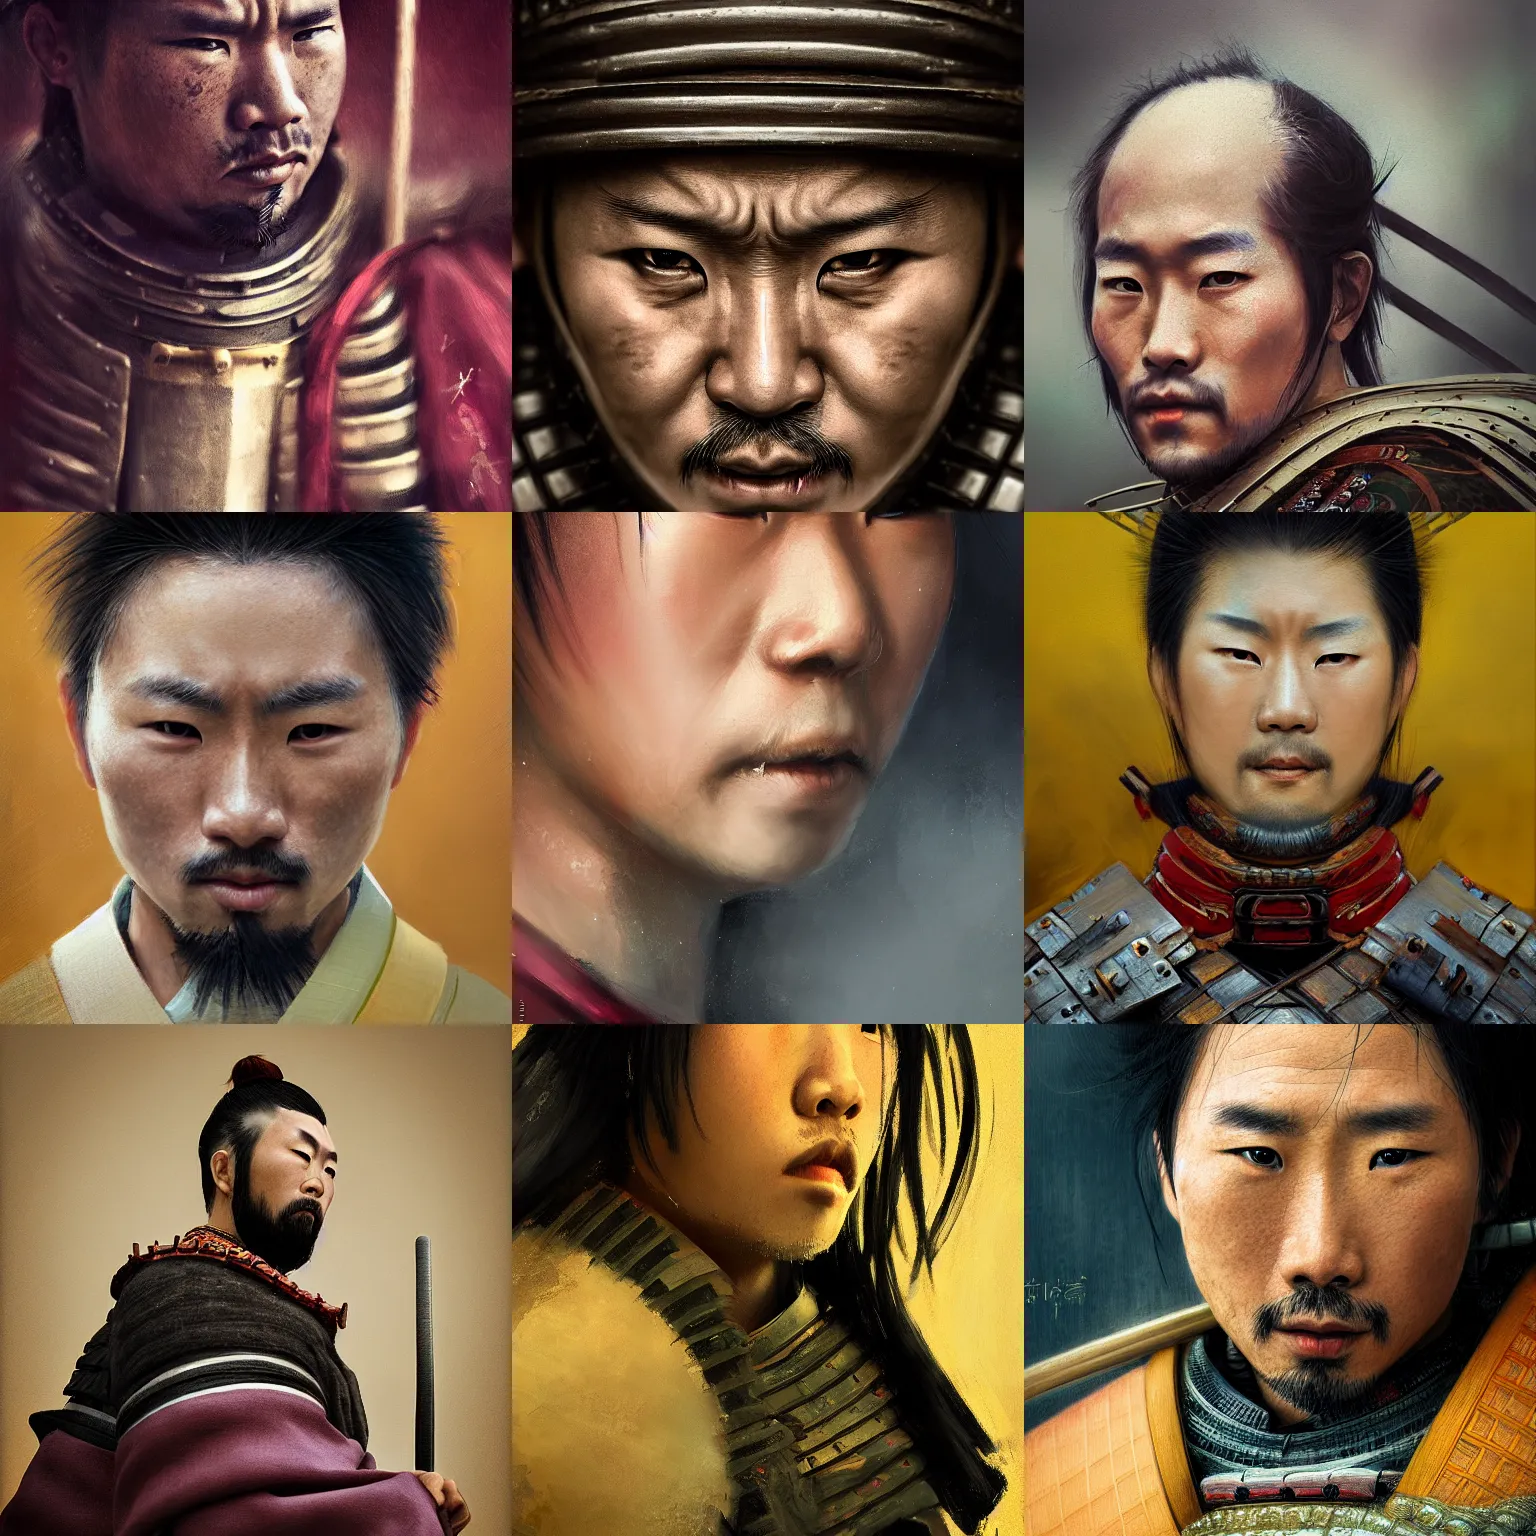 Prompt: portrait of a samurai by wlop, macro face shot